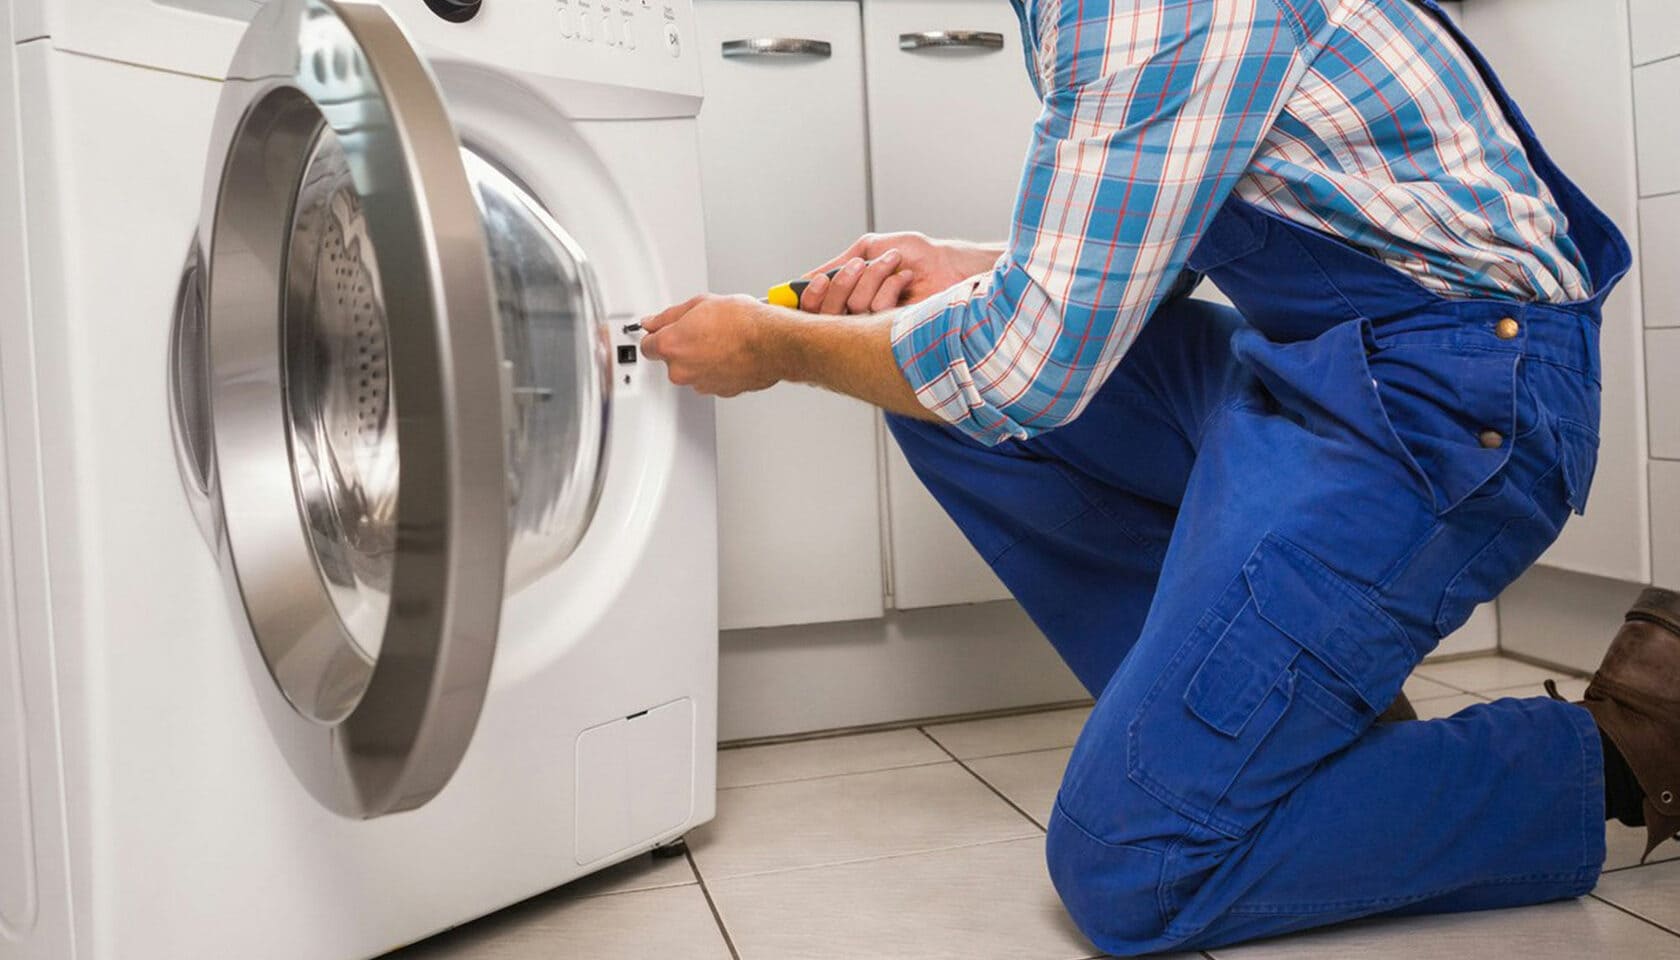 Стоимость услуг по ремонту стиральных машин Indesit, от: